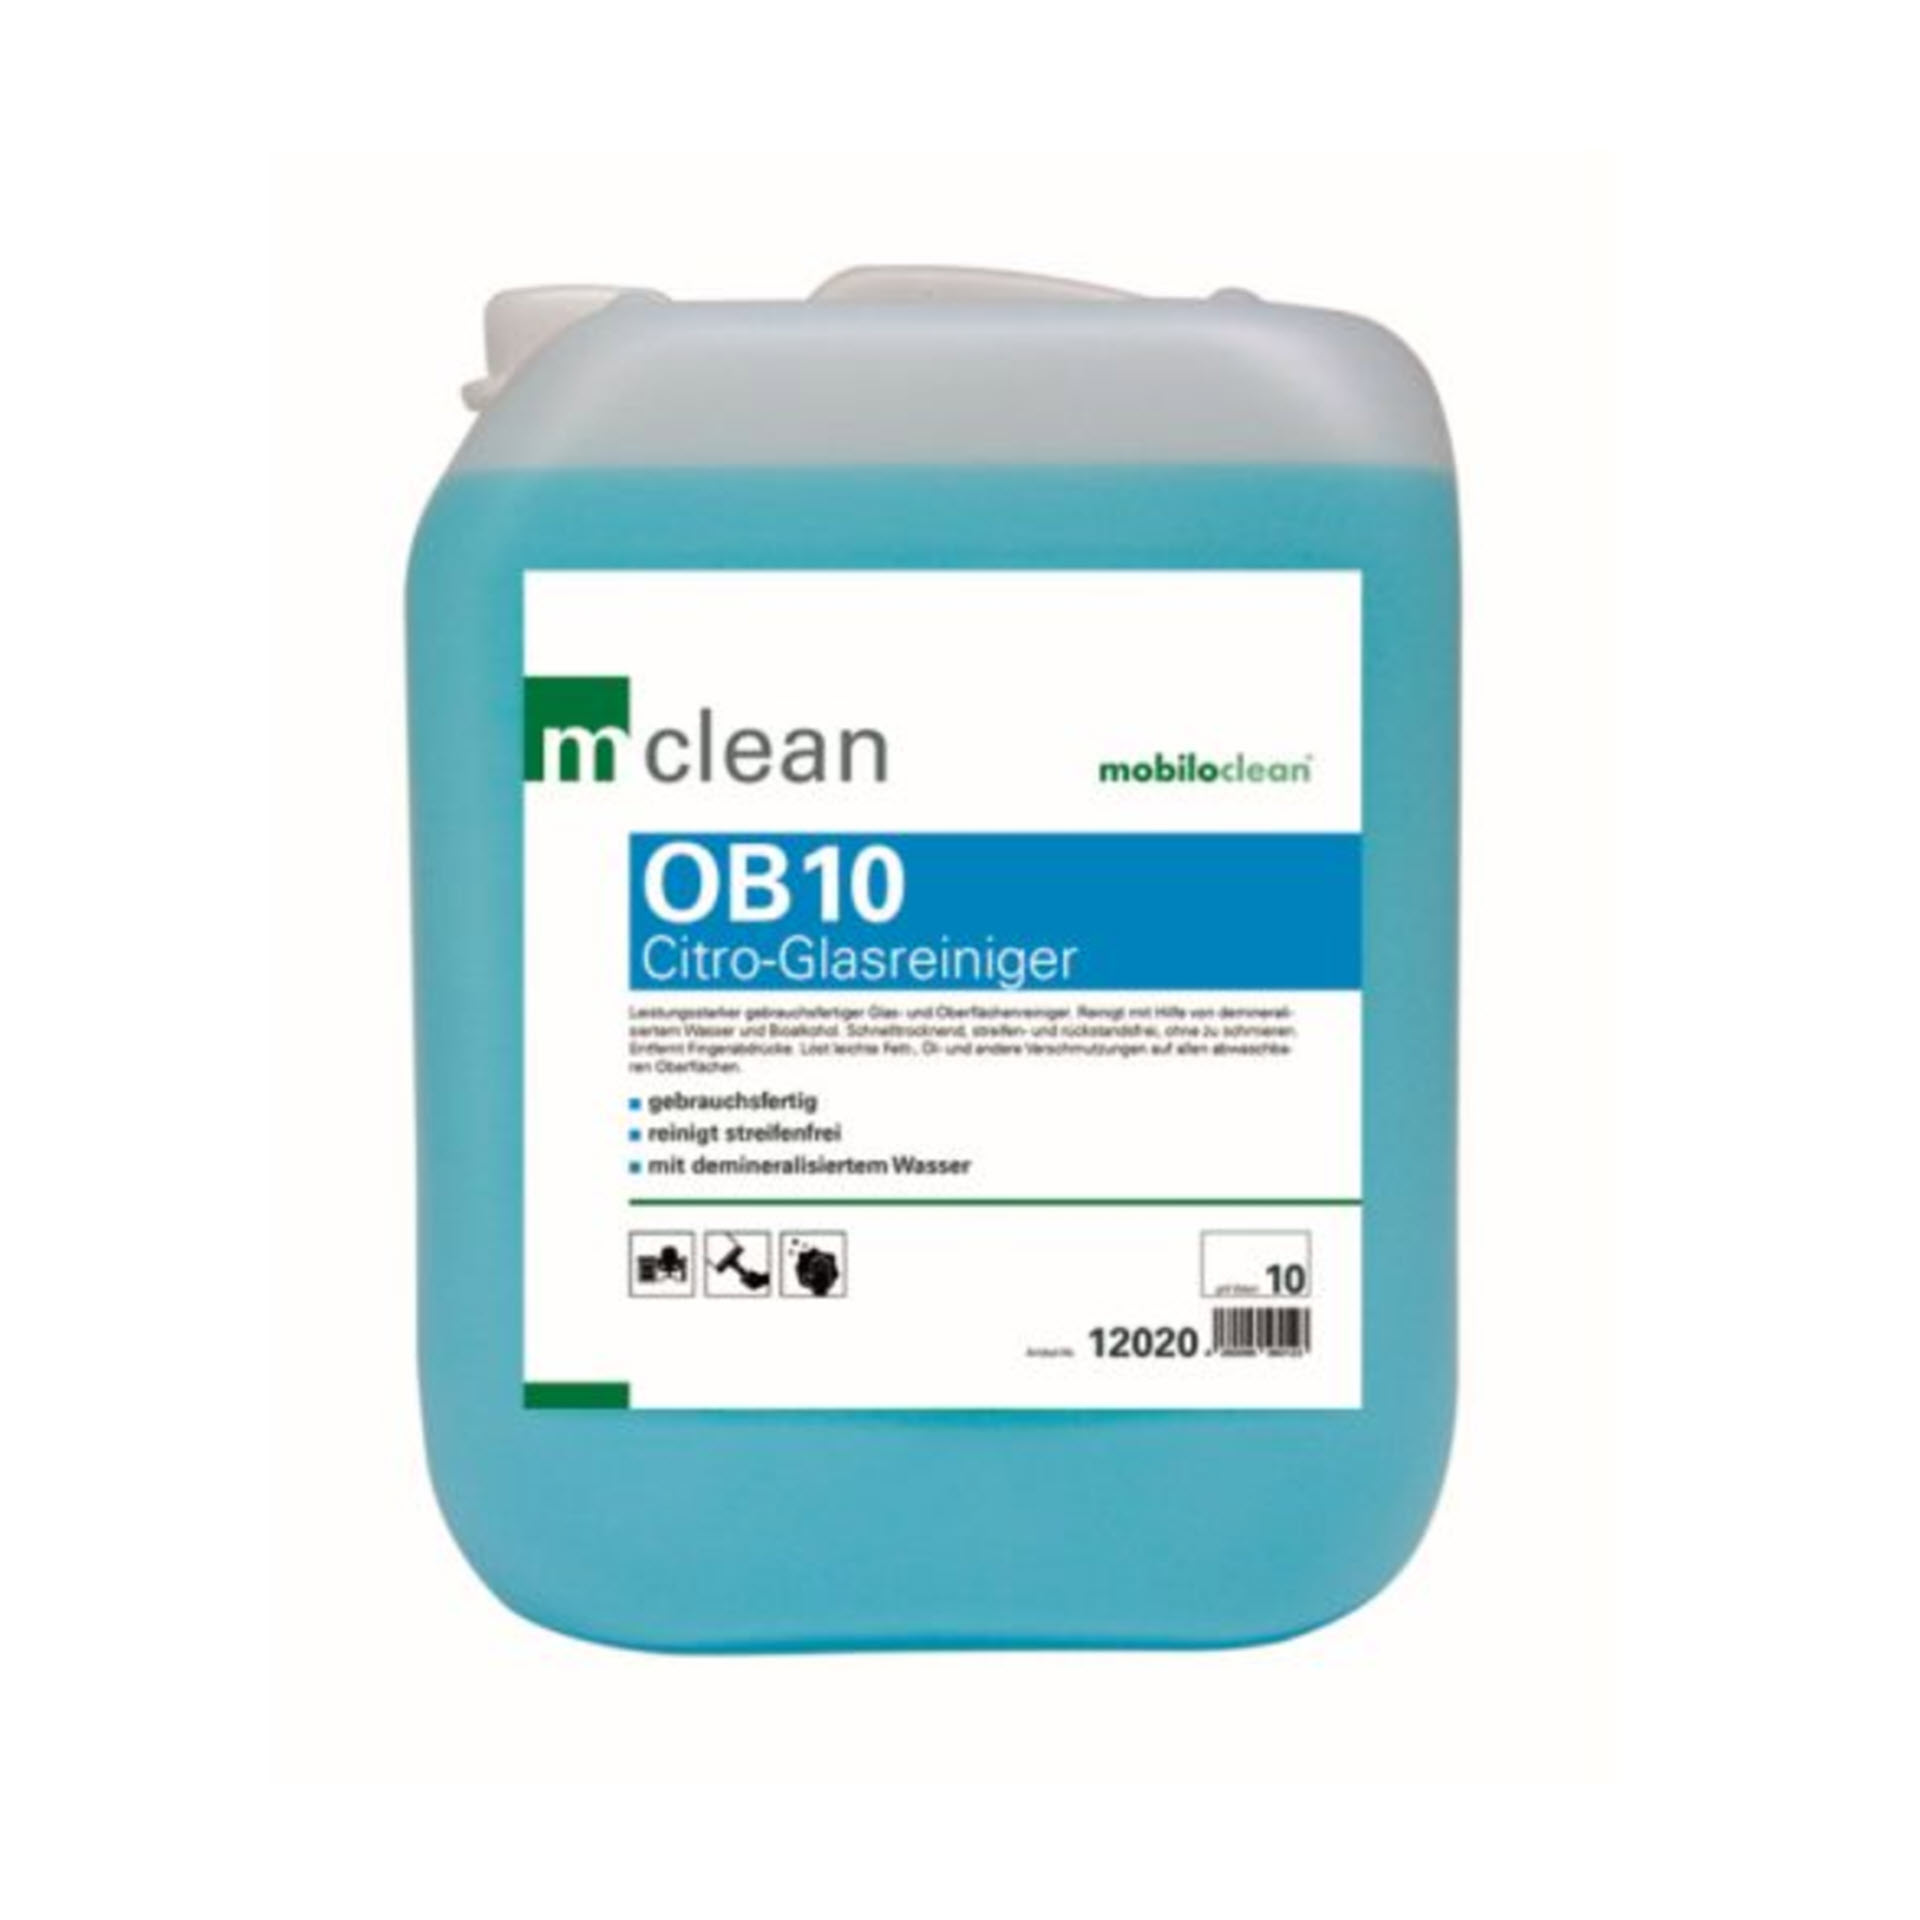 mclean OB 10 Citro Glas- und Oberflächenreiniger - 10 Liter Kanister